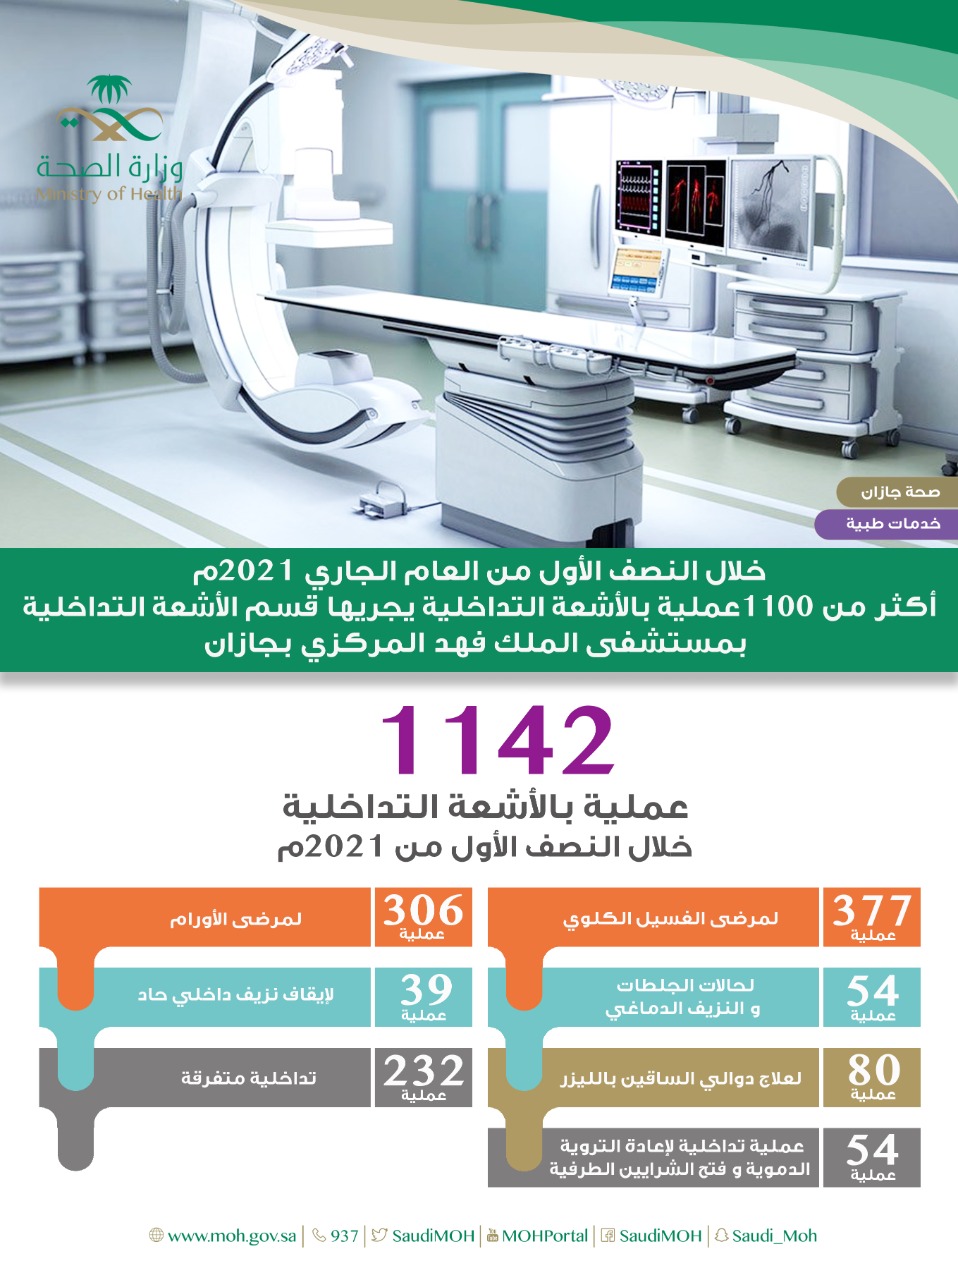 إجراء اكثر من 1100 عملية أشعة تداخلية بمستشفى الملك فهد بجازان